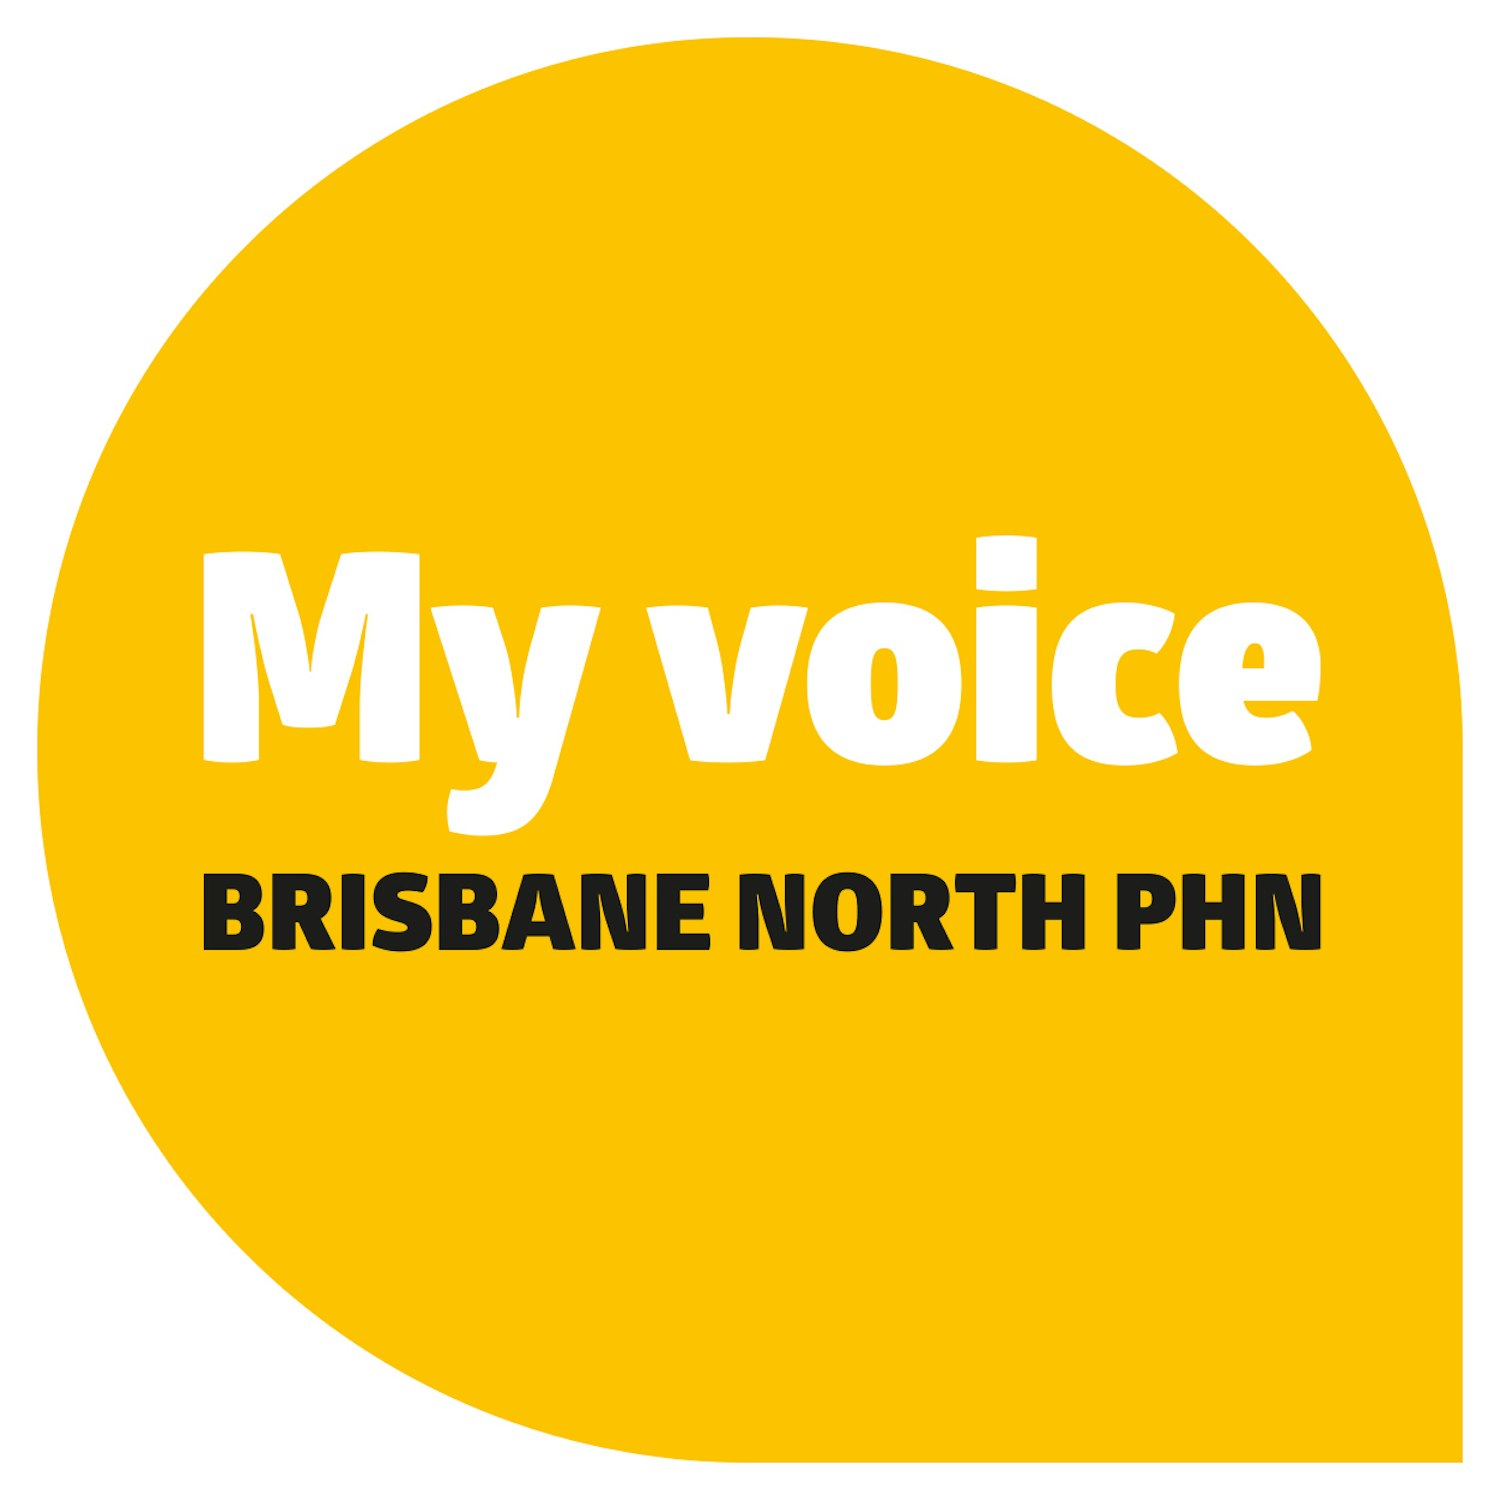 My voice Brisbane North PHN